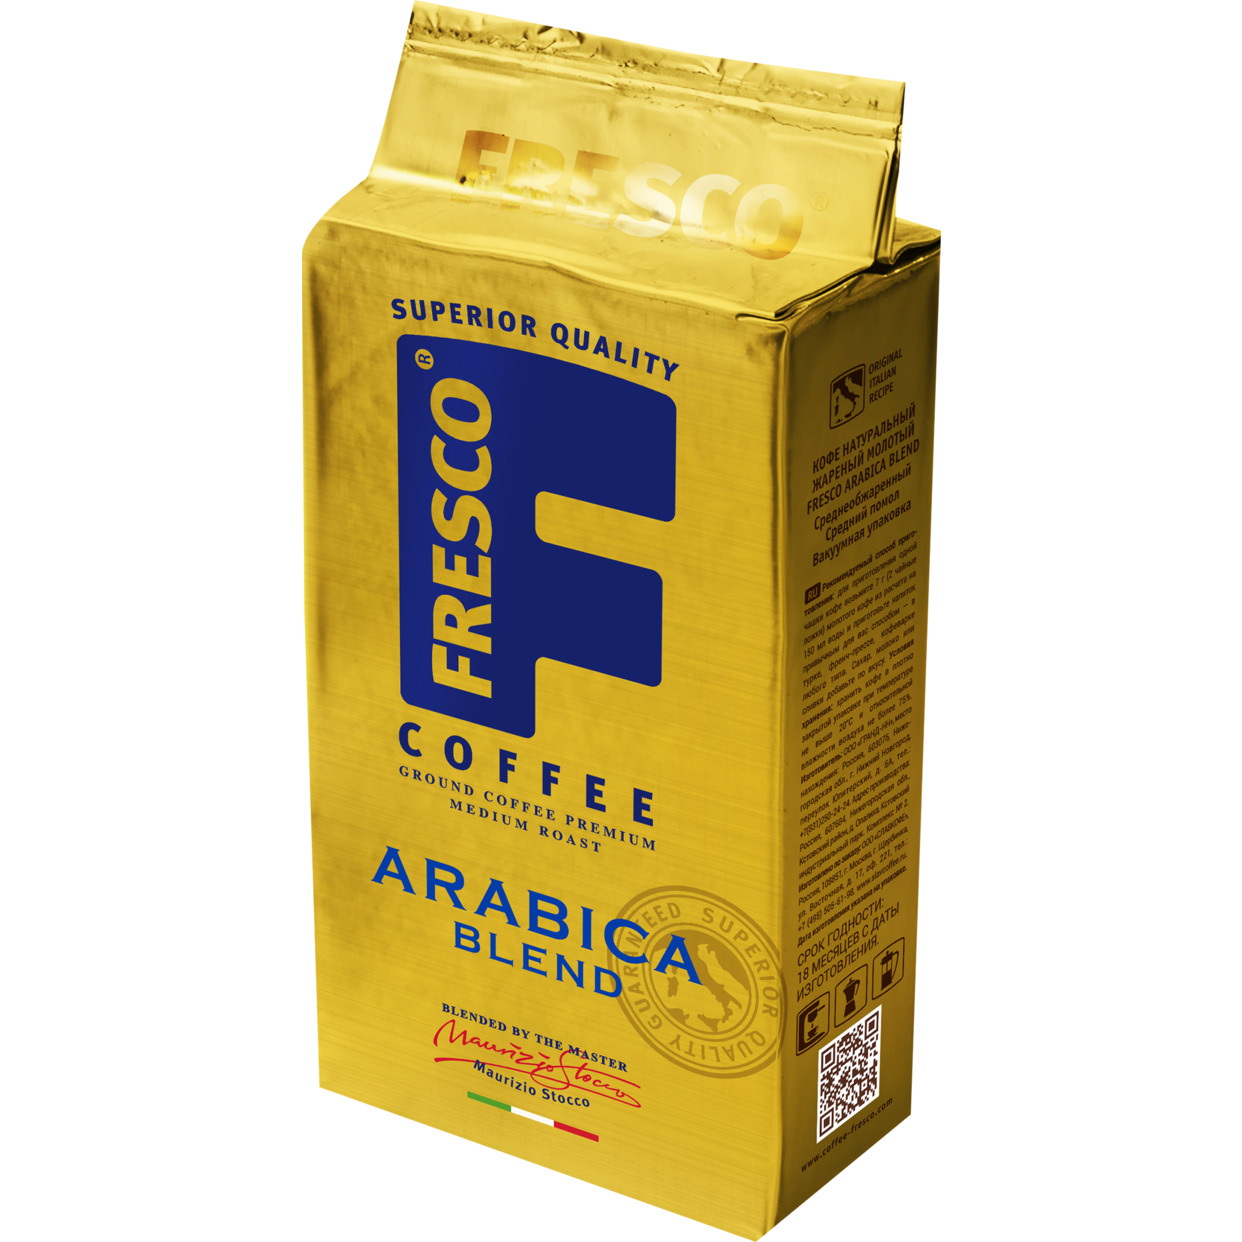 Кофе FRESCO Arabica Blend 250г, жареный молотый, вакуумный пакет по акции в Пятерочке